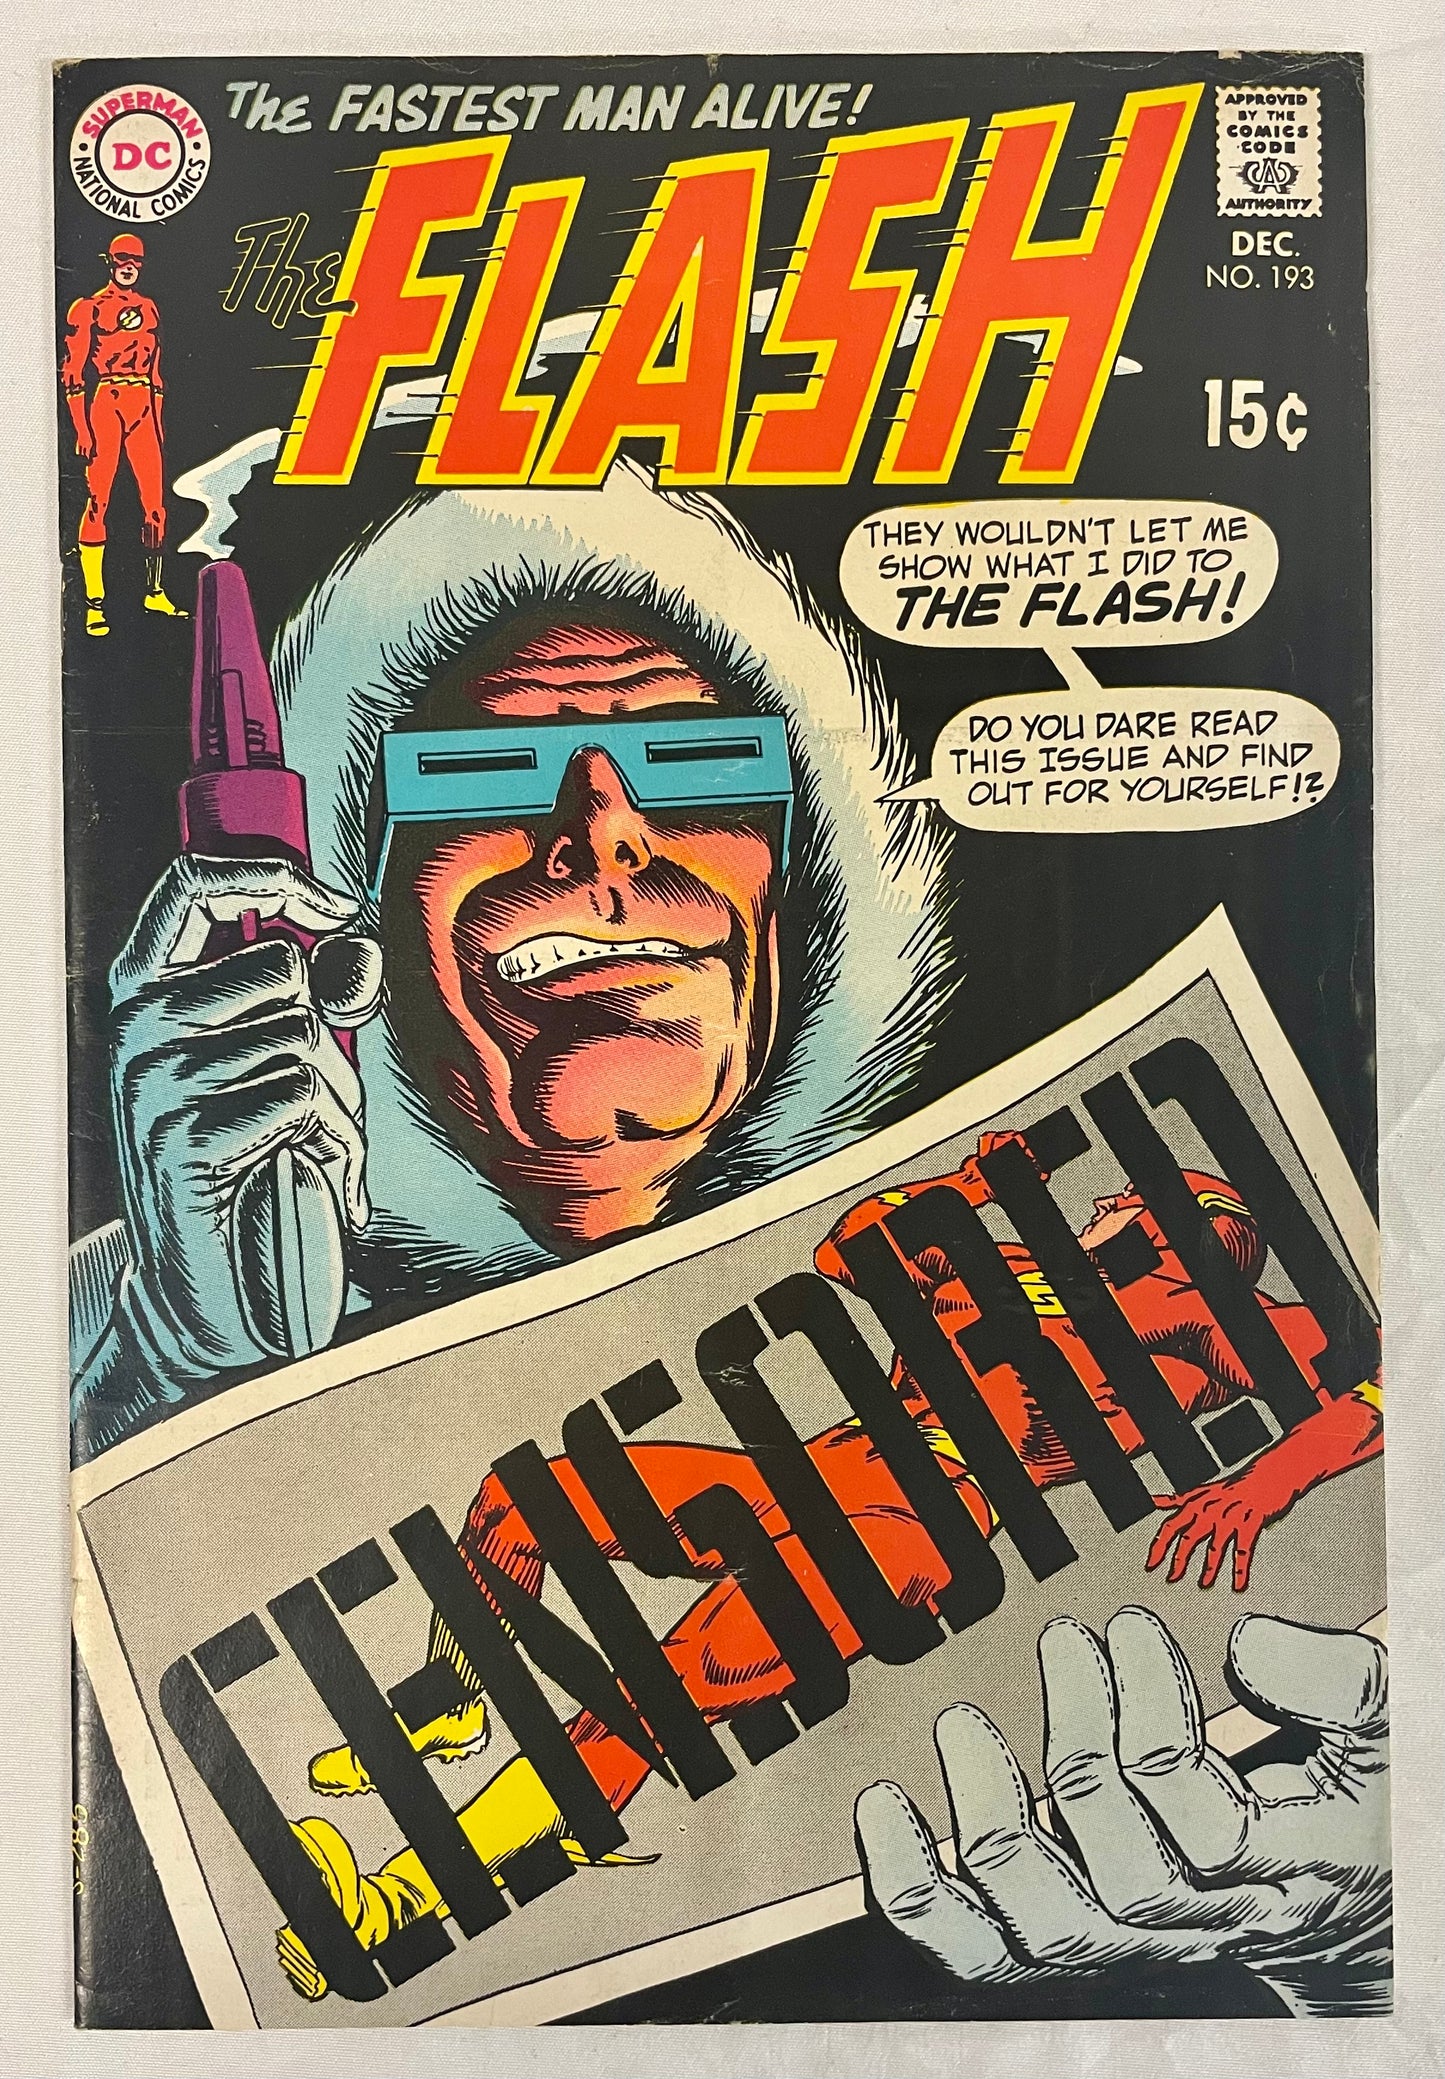 DC Comics The Flash No. 193